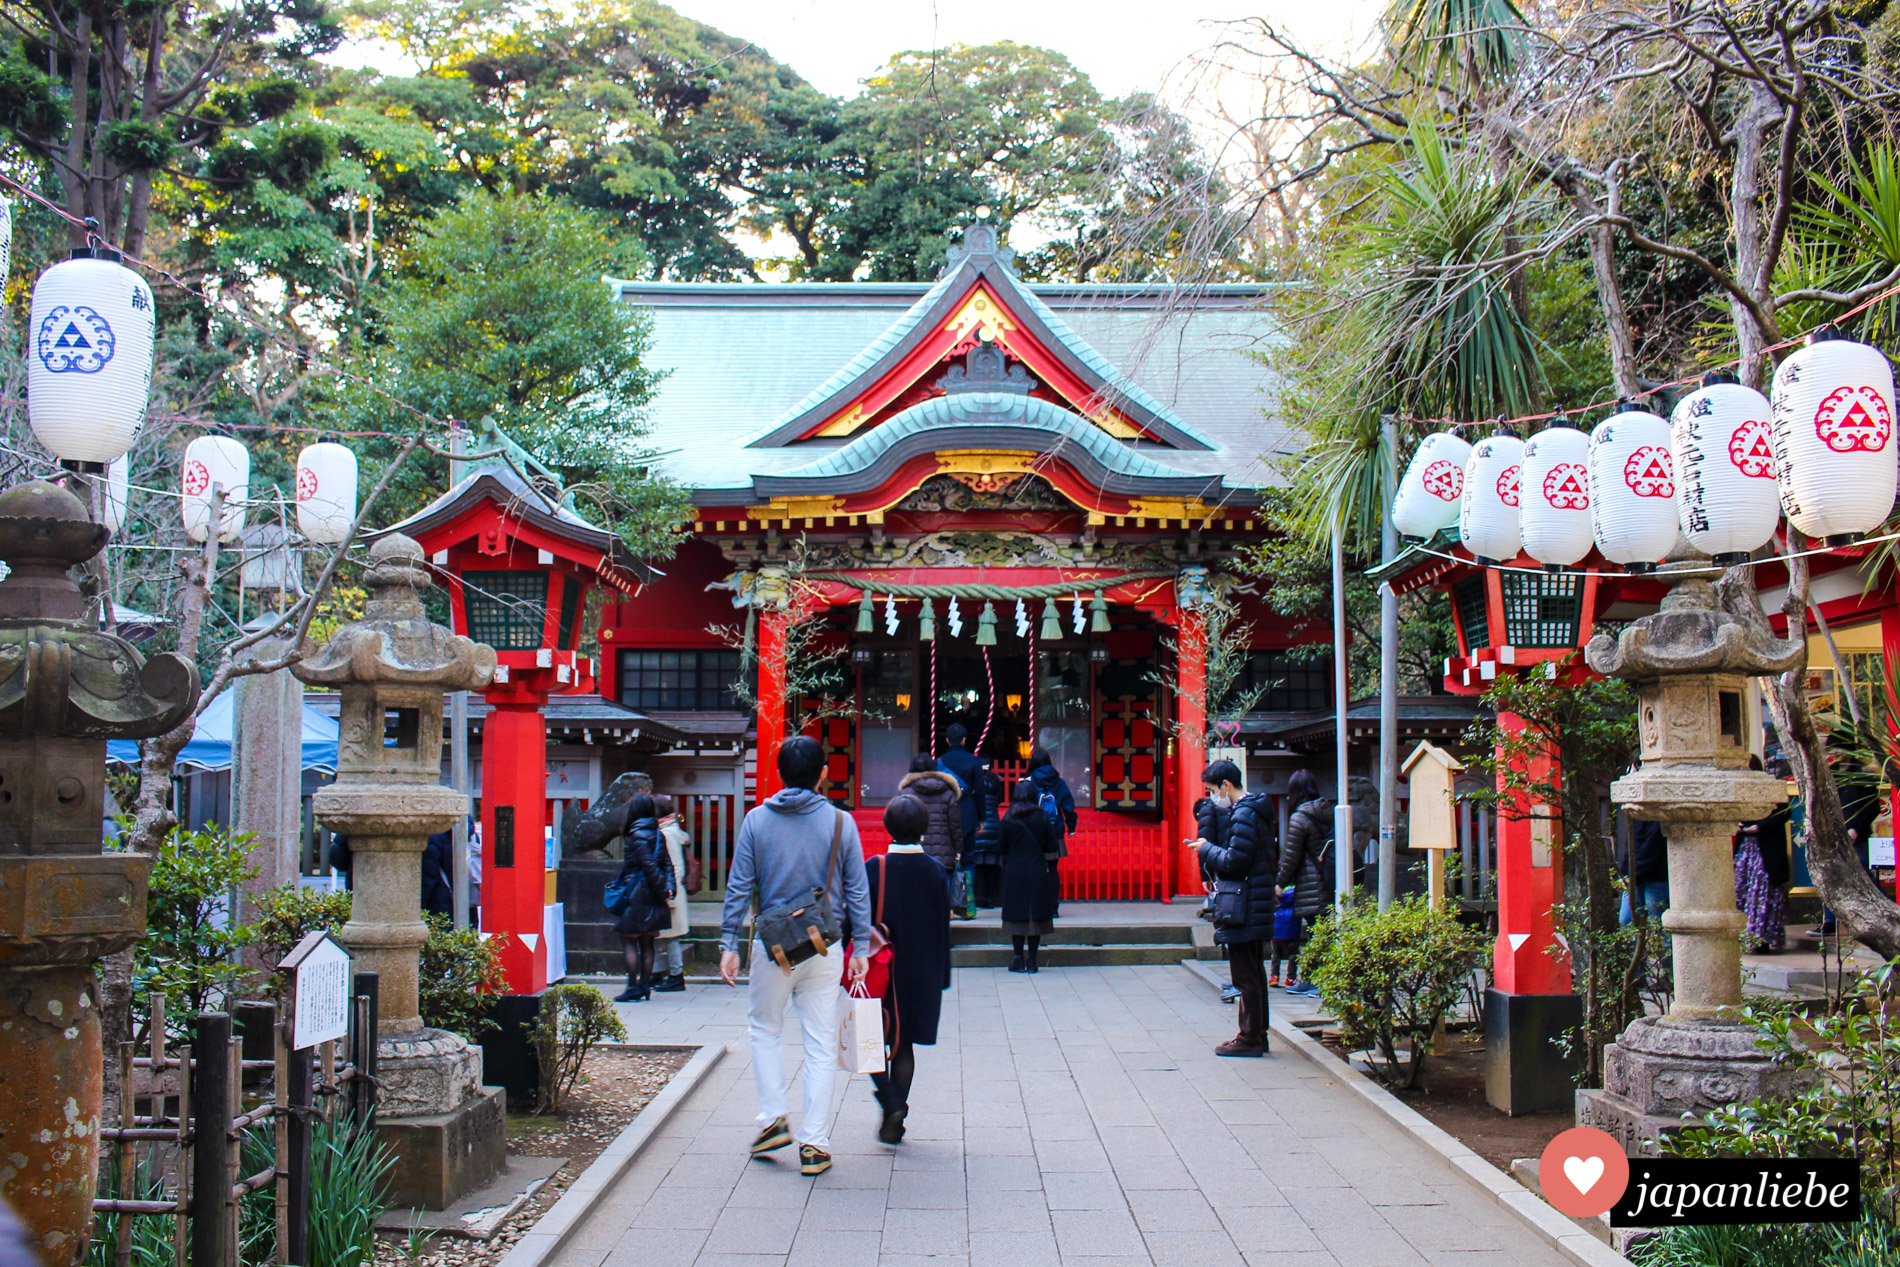 Hinter dem Enoshima-jinja verbergen sich insgesamt drei Schreine.